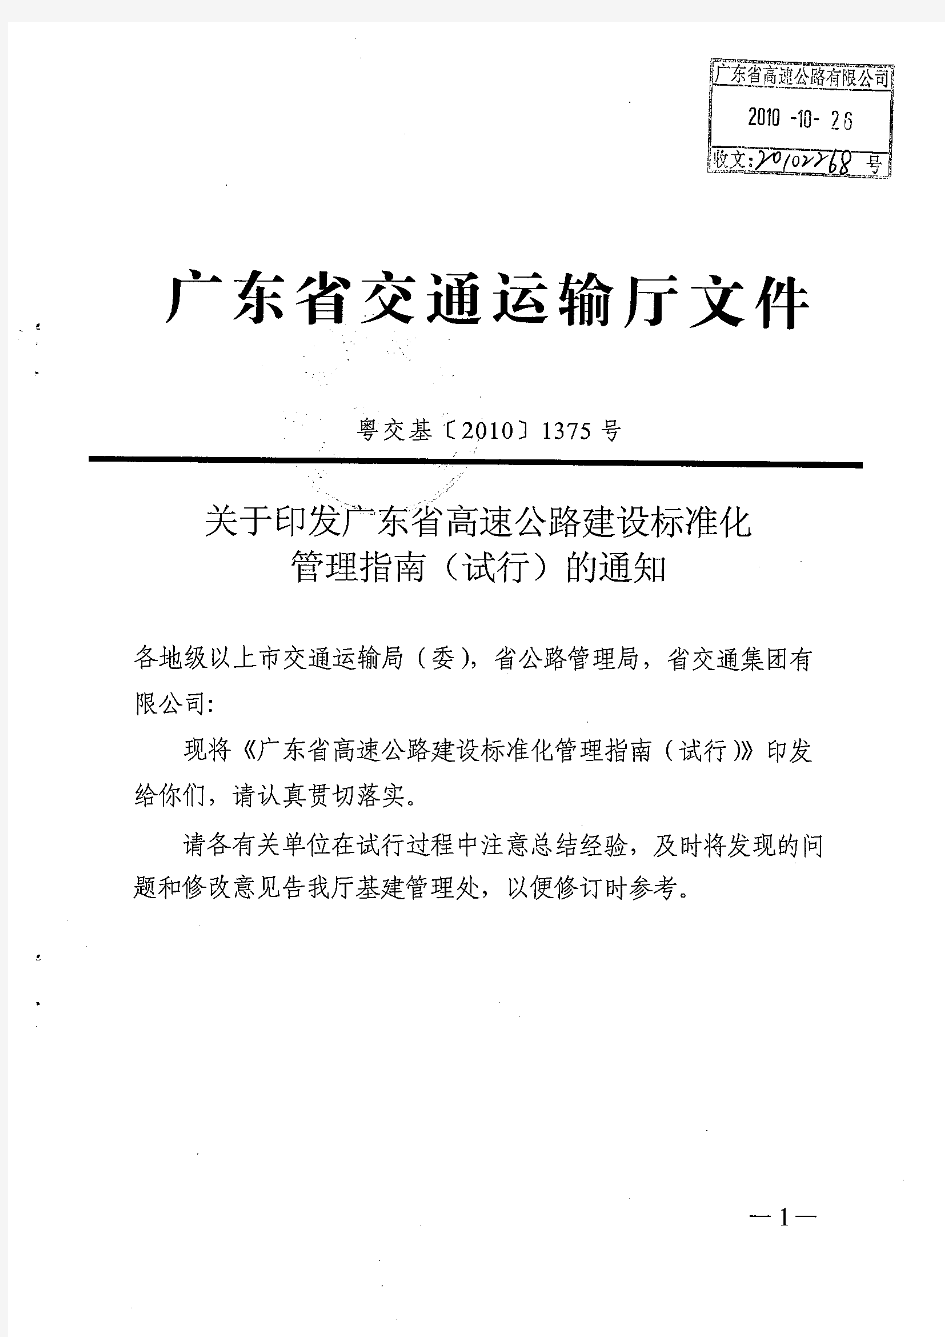 20101192-关于印发广东省高速公路建设标准化管理指南(试行)的通知